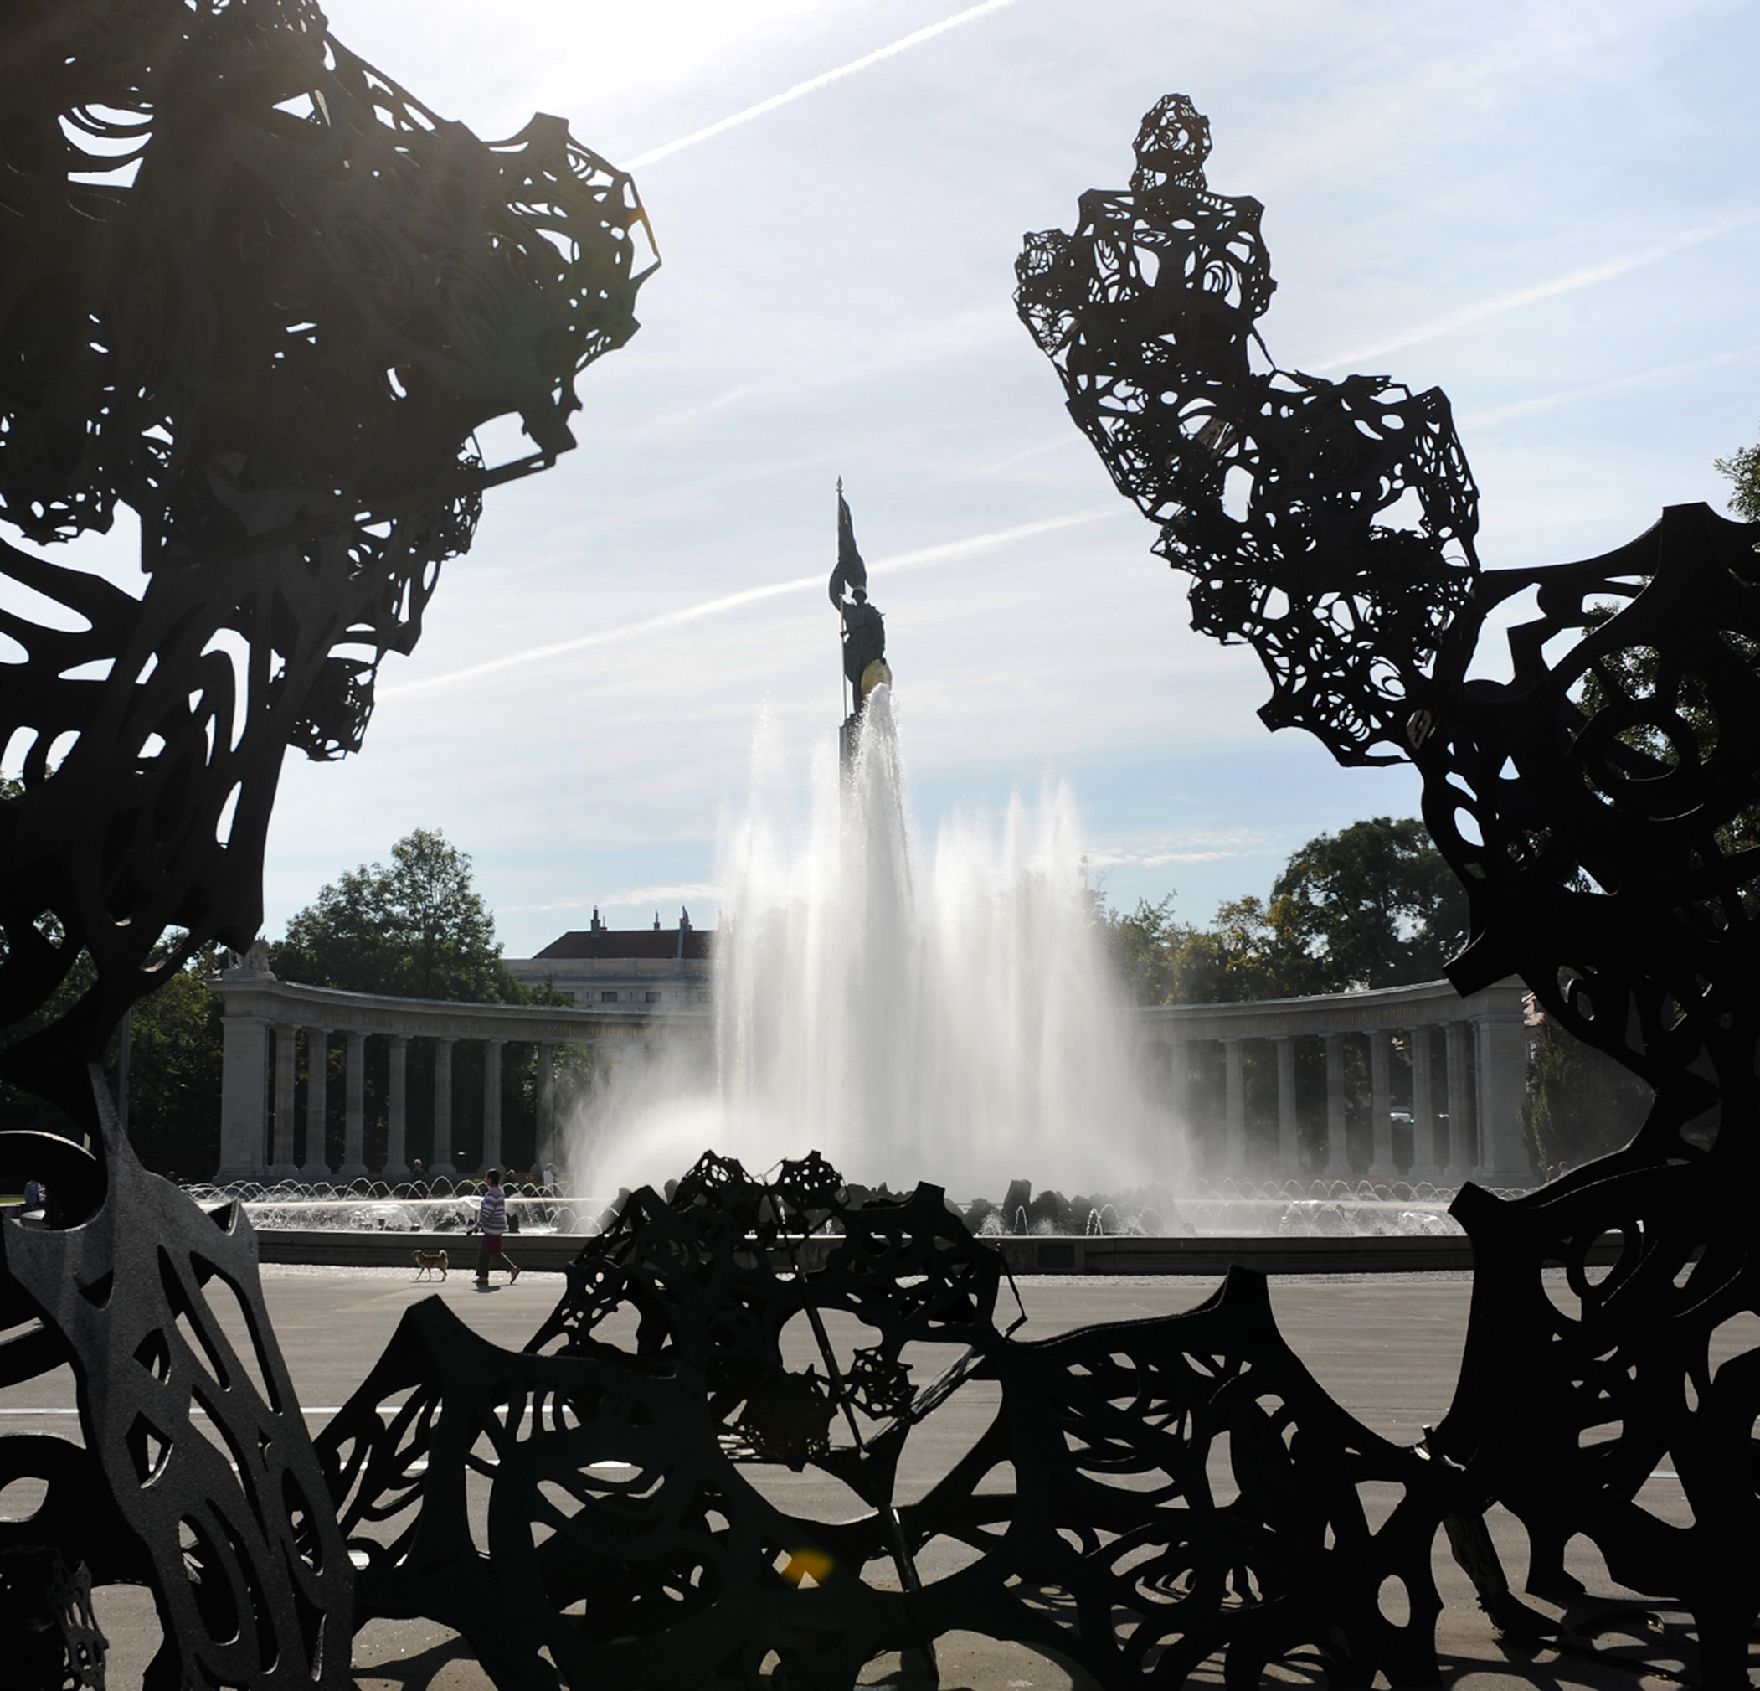 Der Hochstrahlbrunnen am Schwarzenbergplatz. Schlagworte: Brunnen, Stadtlandschaft, Statue, Wasser